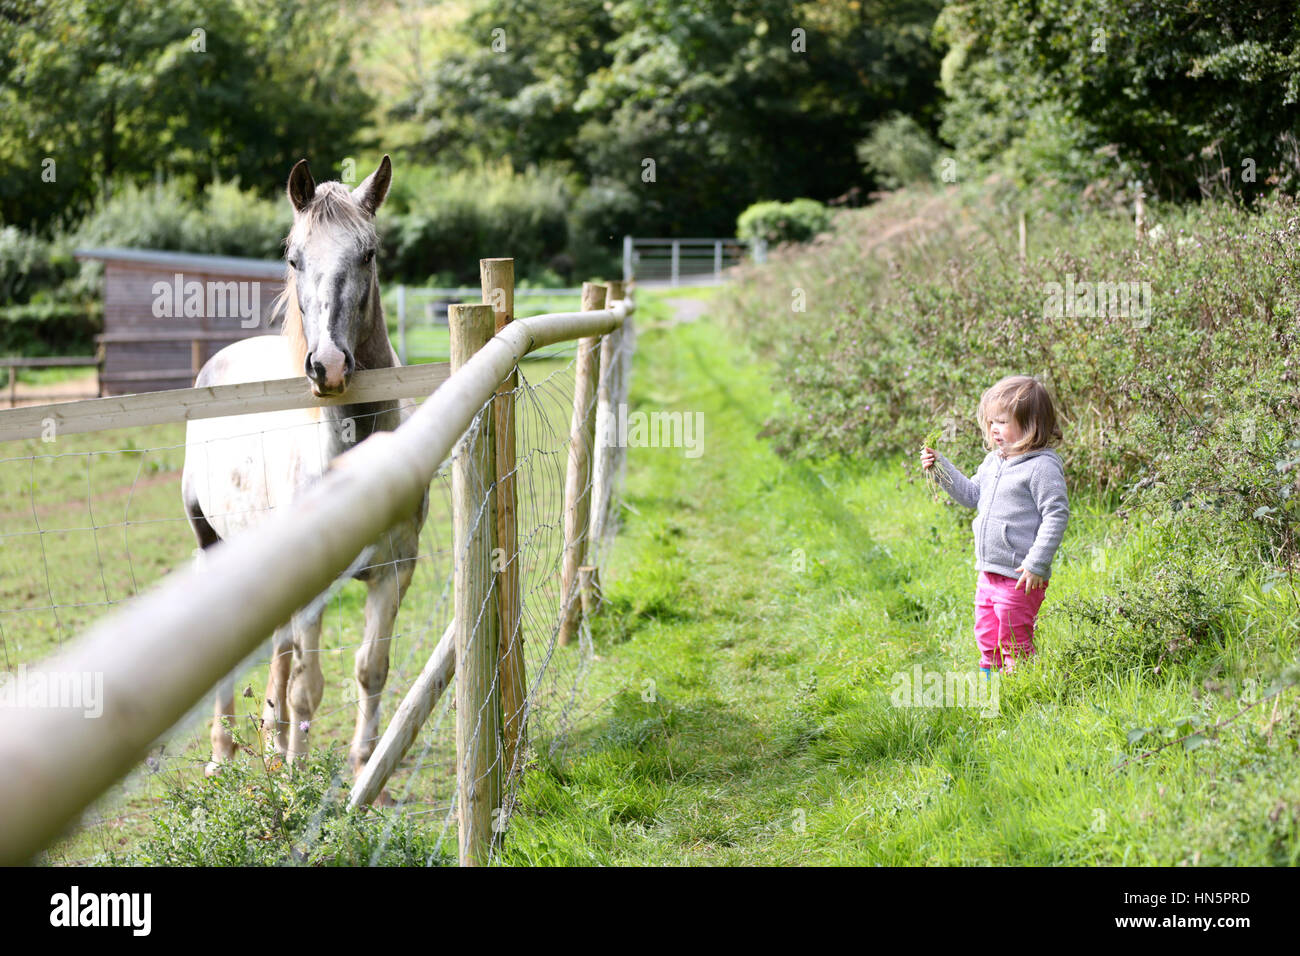 Une jeune fille tenant une poignée d'herbe pour nourrir un cheval dans un enclos à proximité Banque D'Images